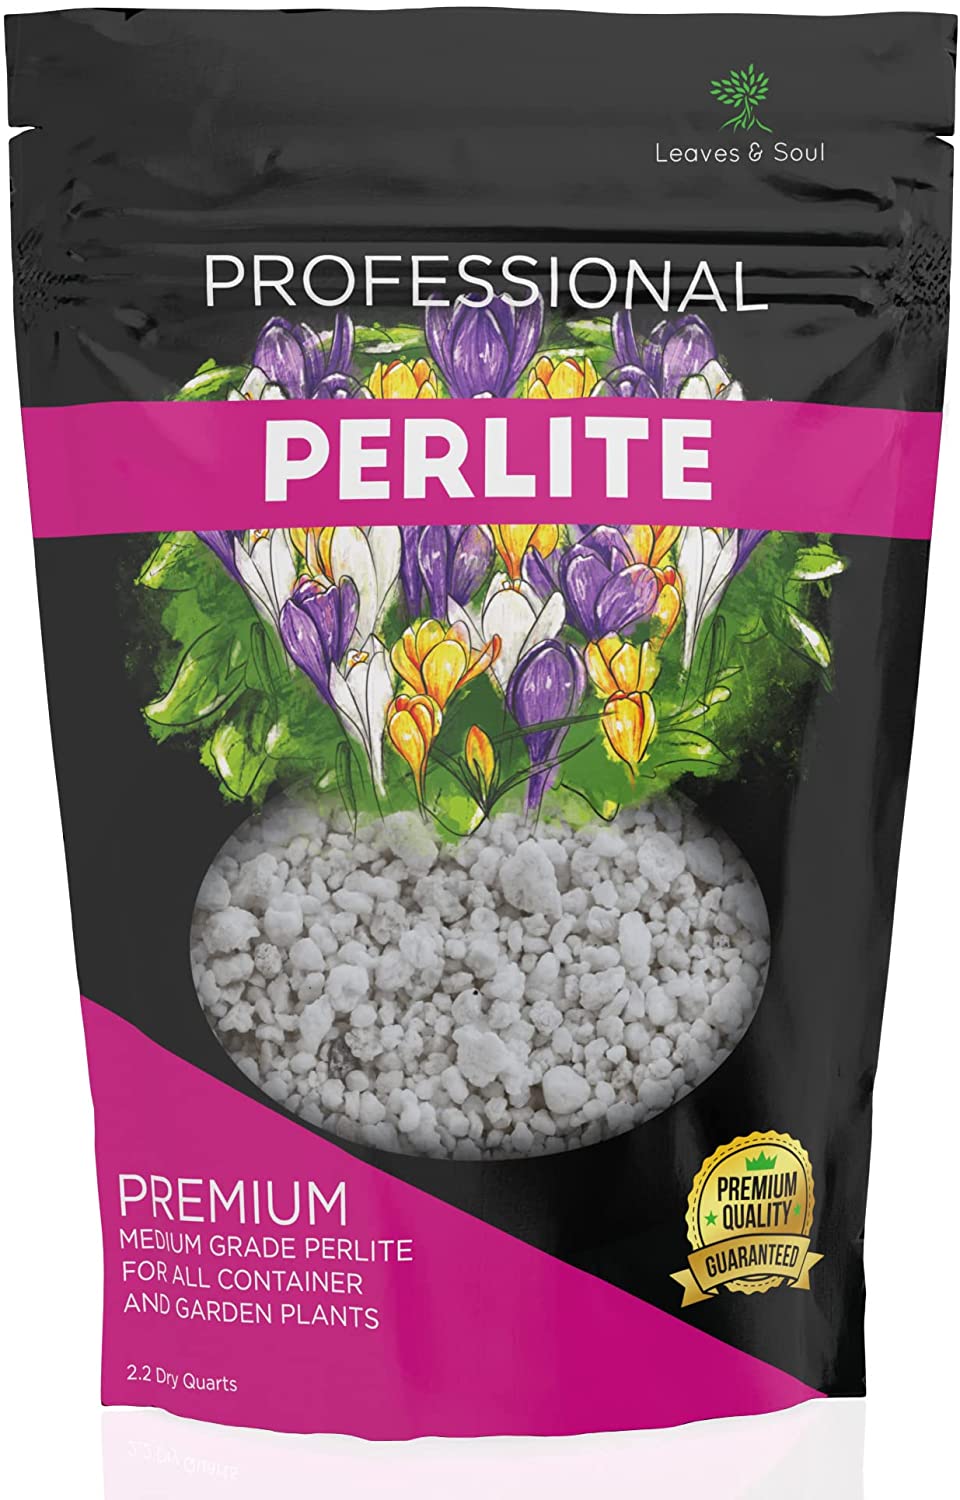 Professional Perlite | Large 2.2 Quarts | Medium Grade for Container and Garden Plants